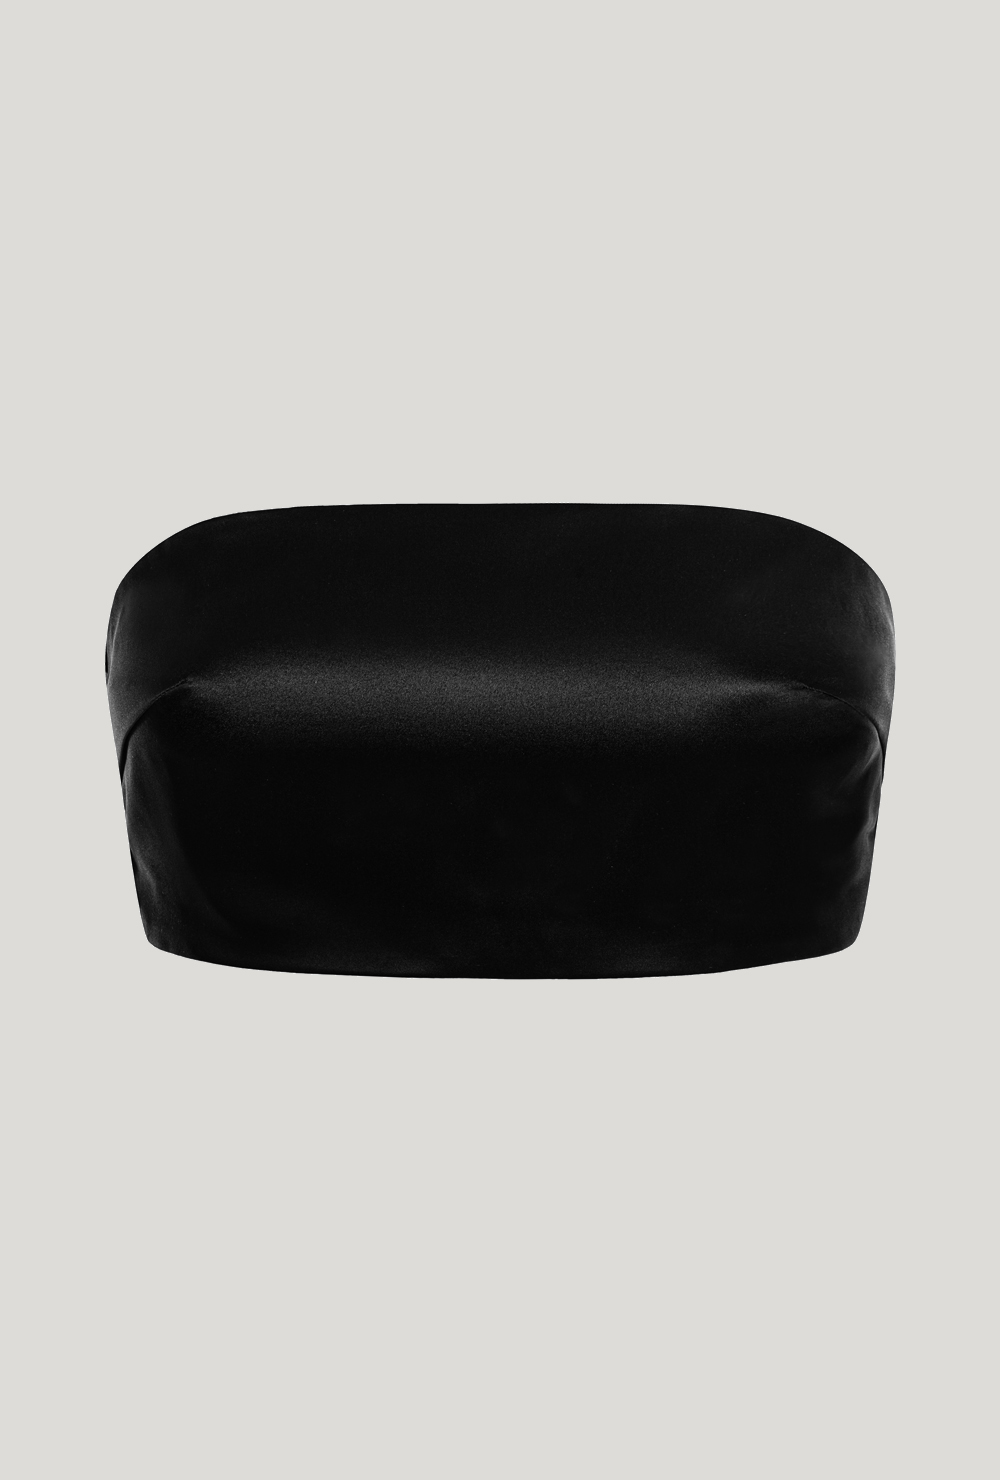 Black strapless bralette top made of silk satin Czarny jedwabny top typu braletka